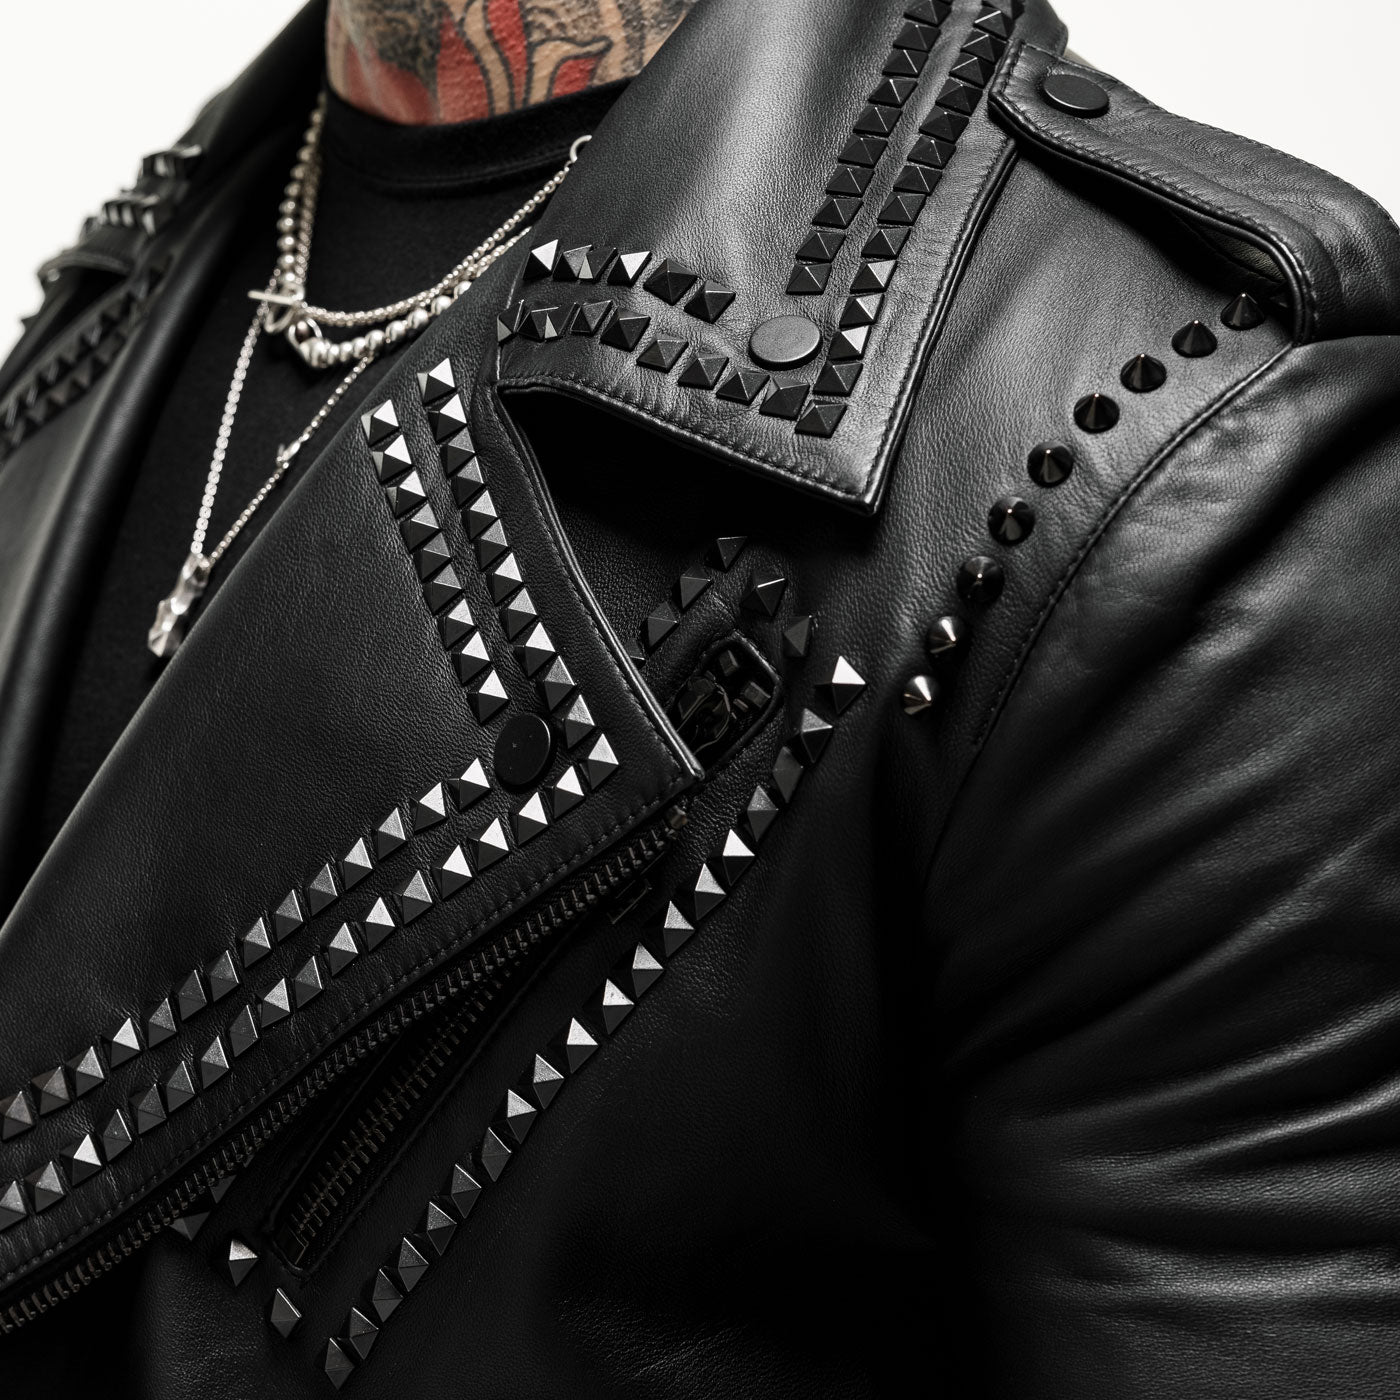 Ruthless Studded Leather Jacket - Black